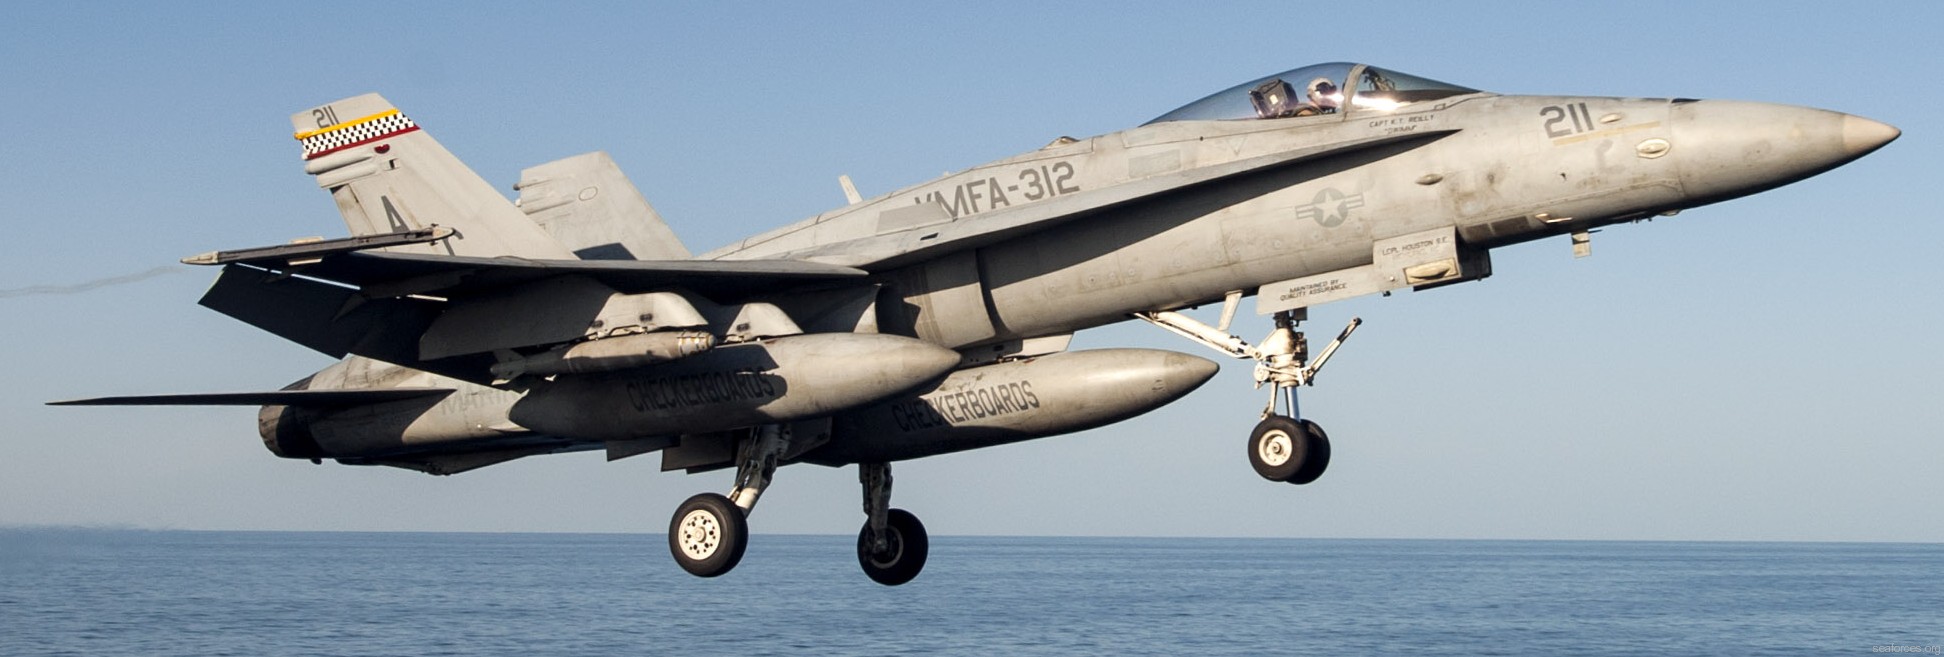 vmfa-312 checkerboards marine fighter attack squadron usmc f/a-18c hornet cvw-3 uss harry s. truman cvn-75 29